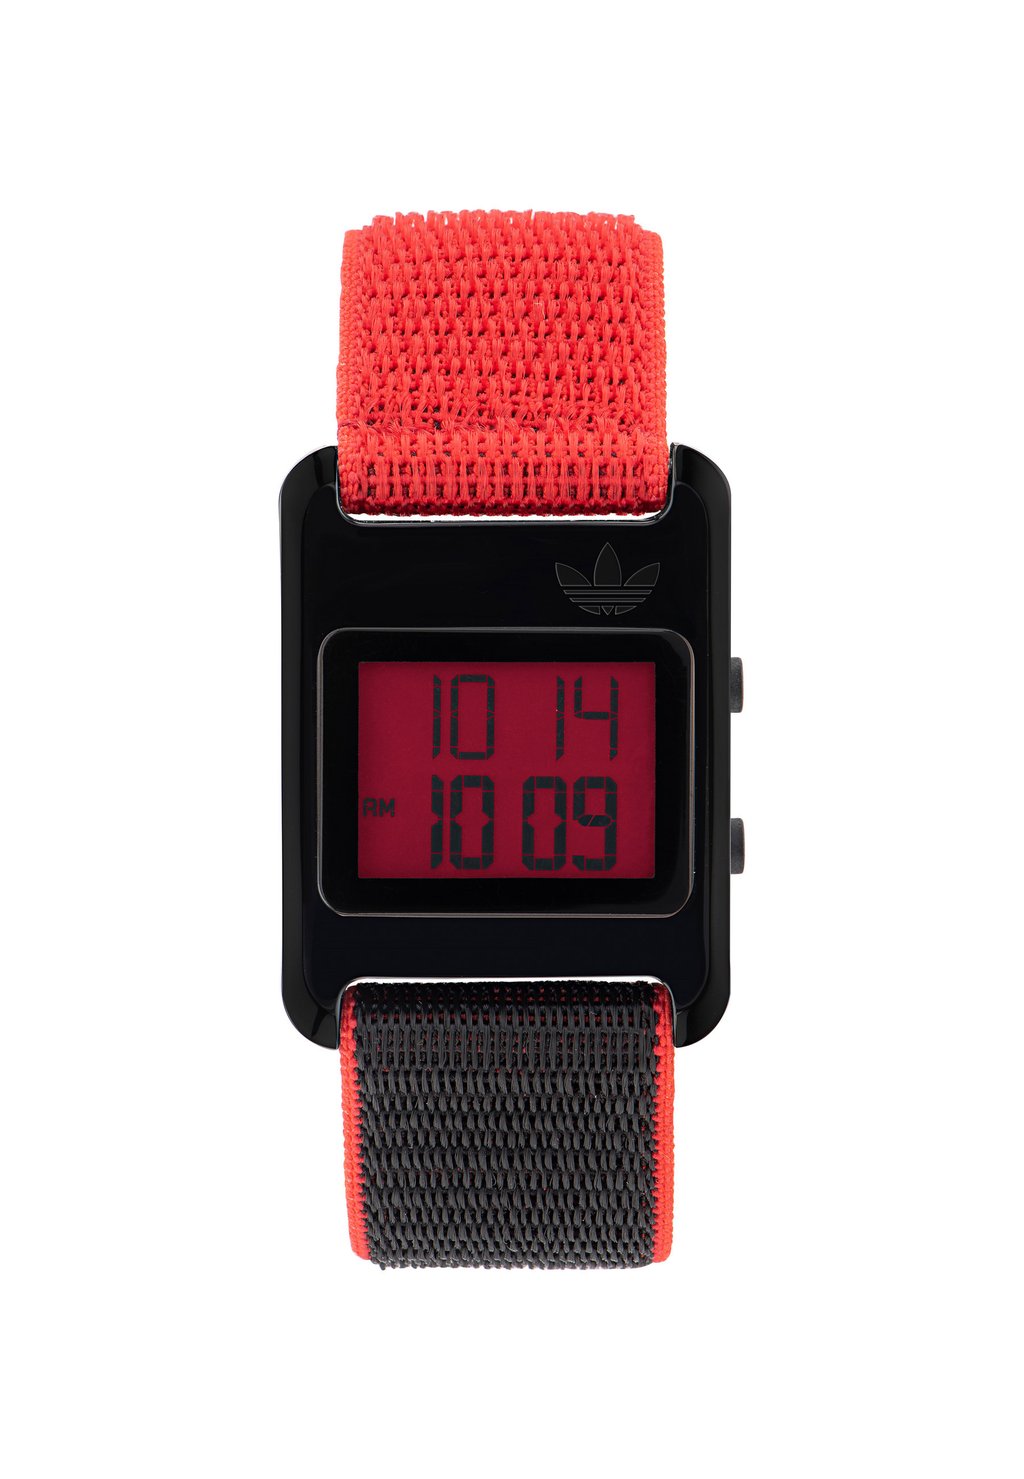 Цифровые часы Retro Pop Digital adidas Originals, цвет black and red